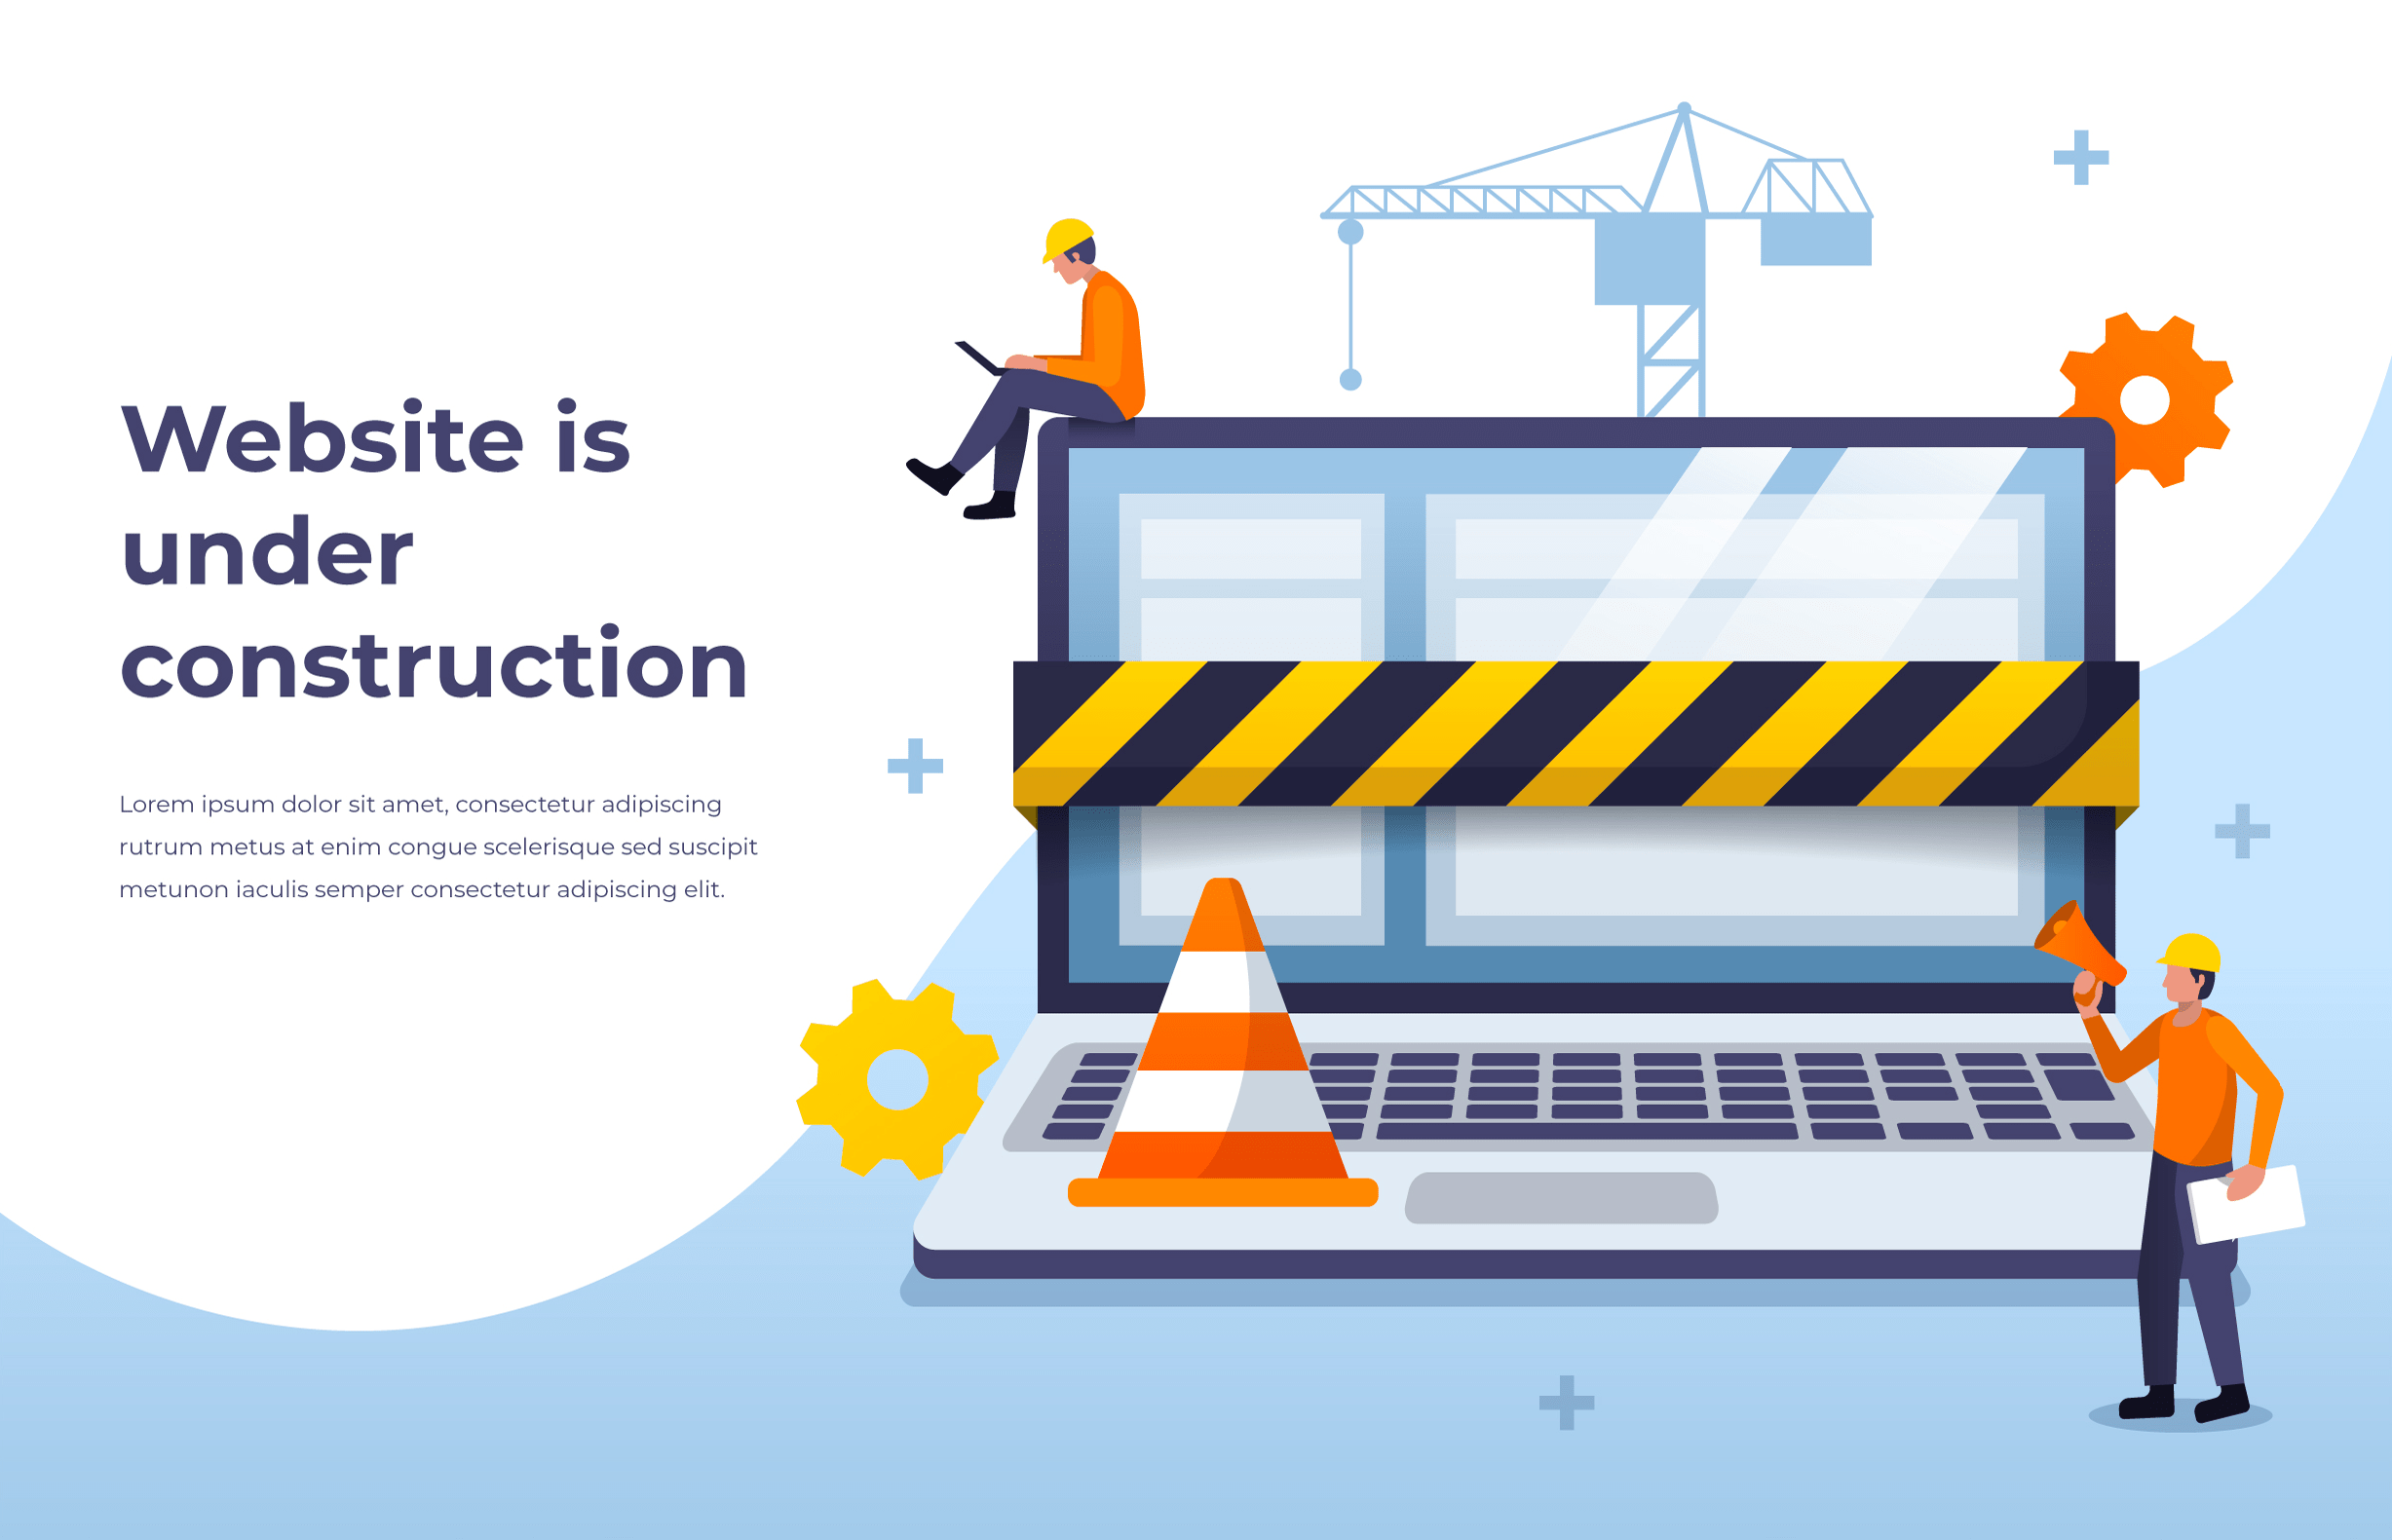 Arrive a building. Under Construction. Страница under Construction. Website under Construction. Our website is under Construction.